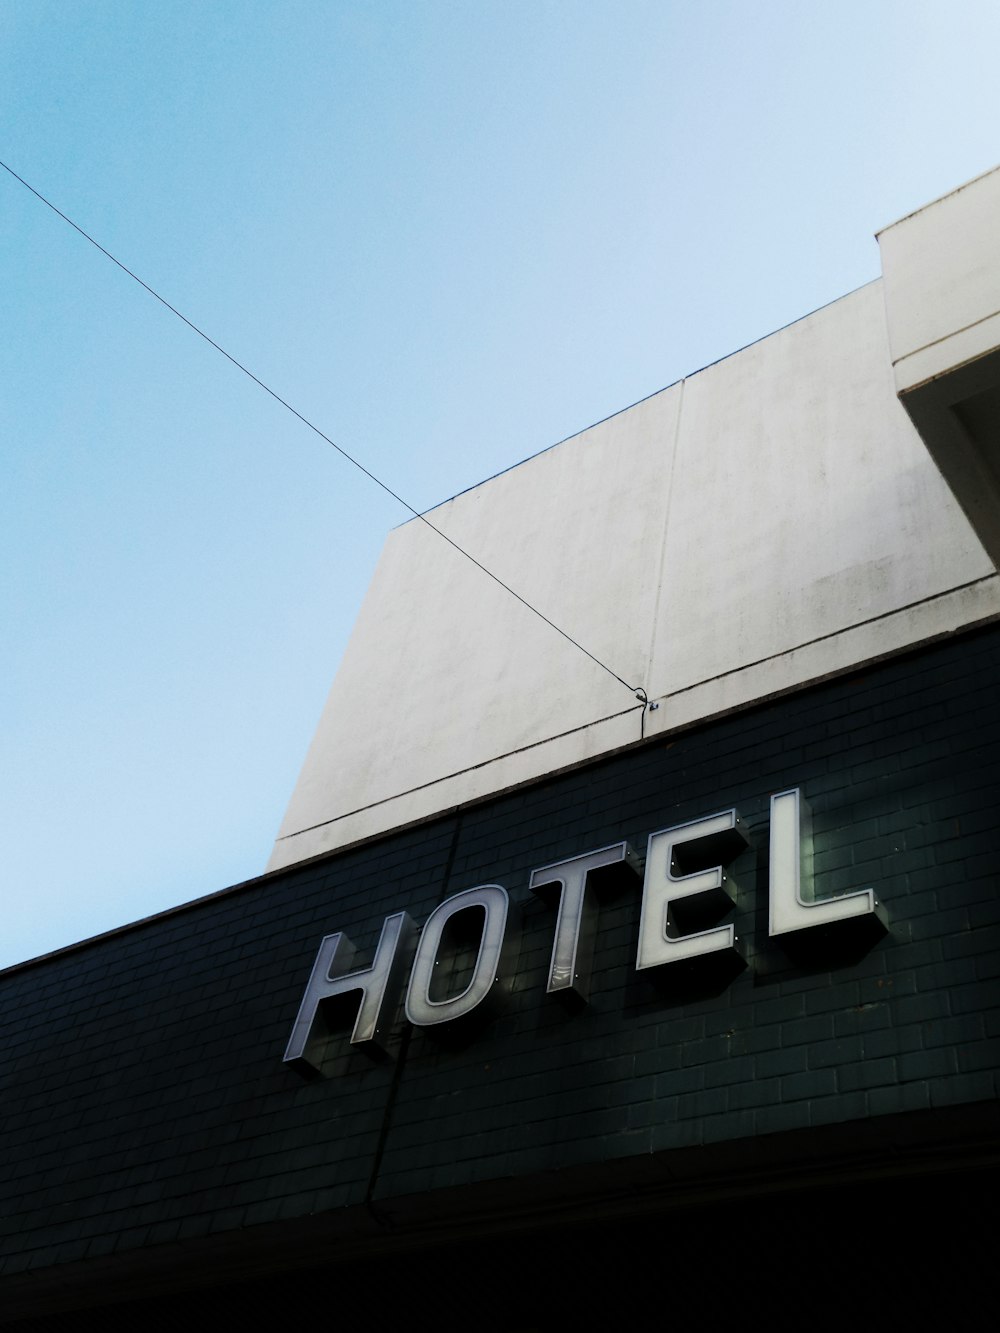 穏やかな青空に浮かぶ黒と白のコンクリート製ホテルの建物